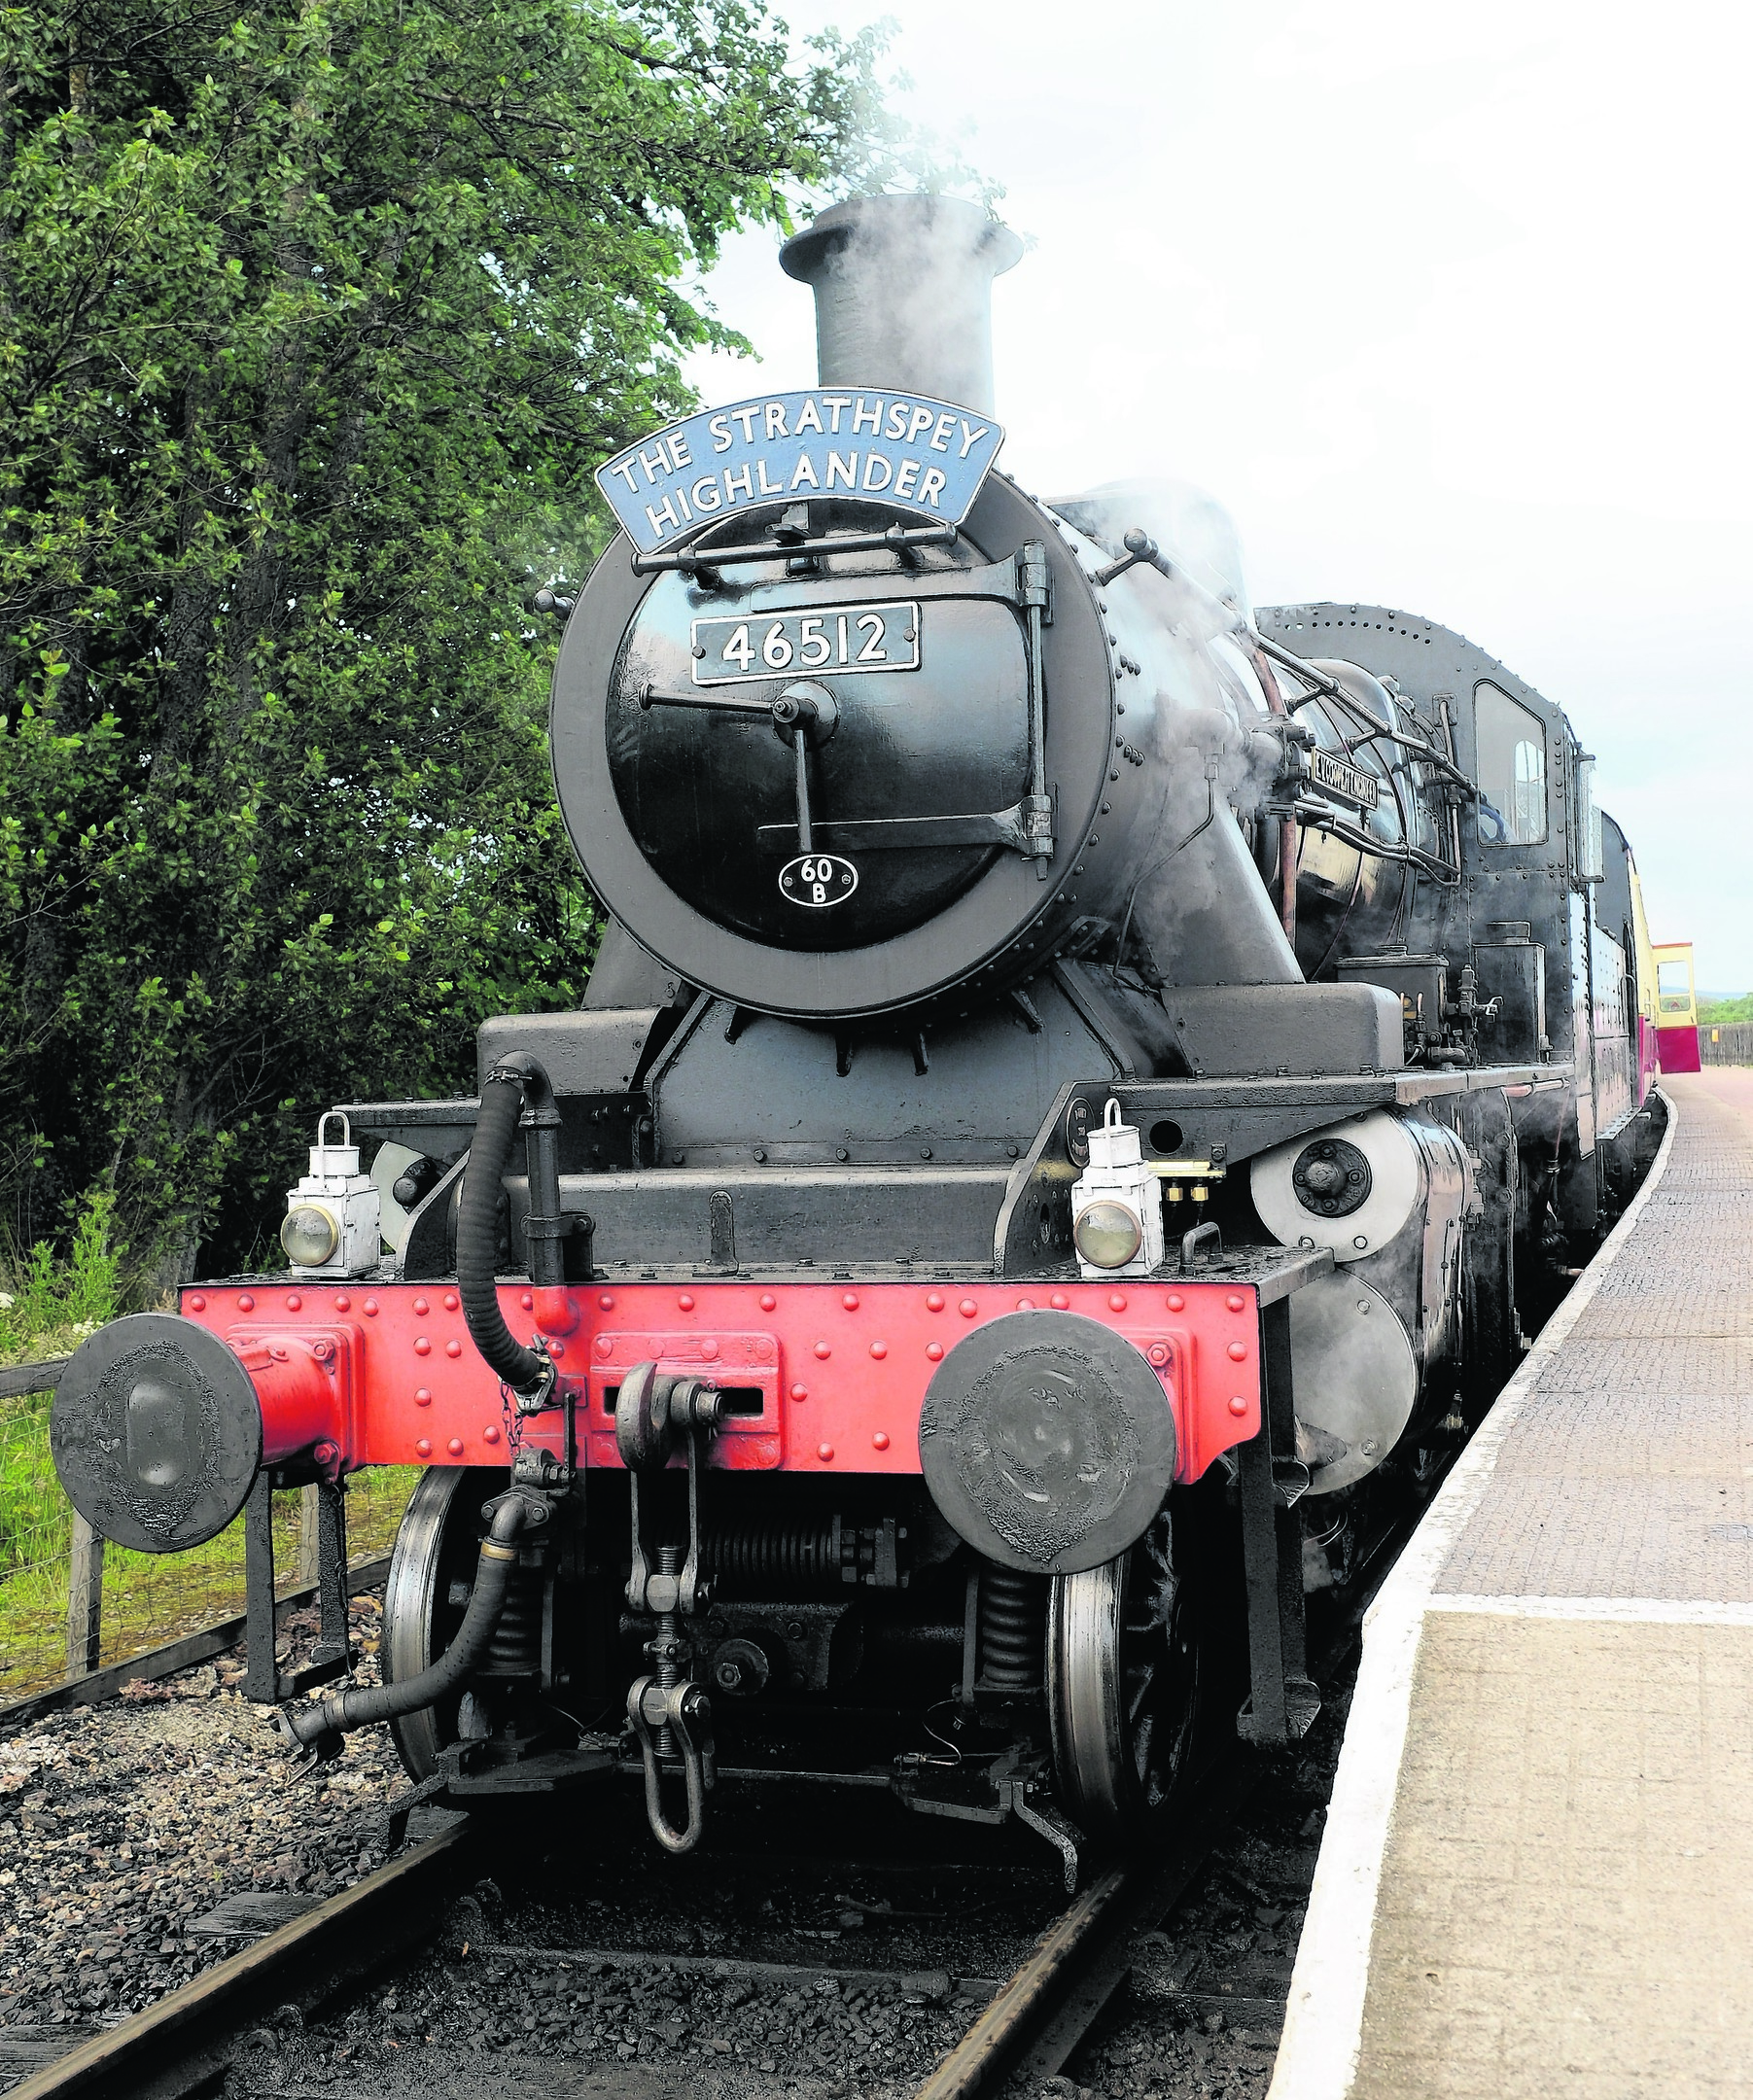 The Strathspey Steam Railway